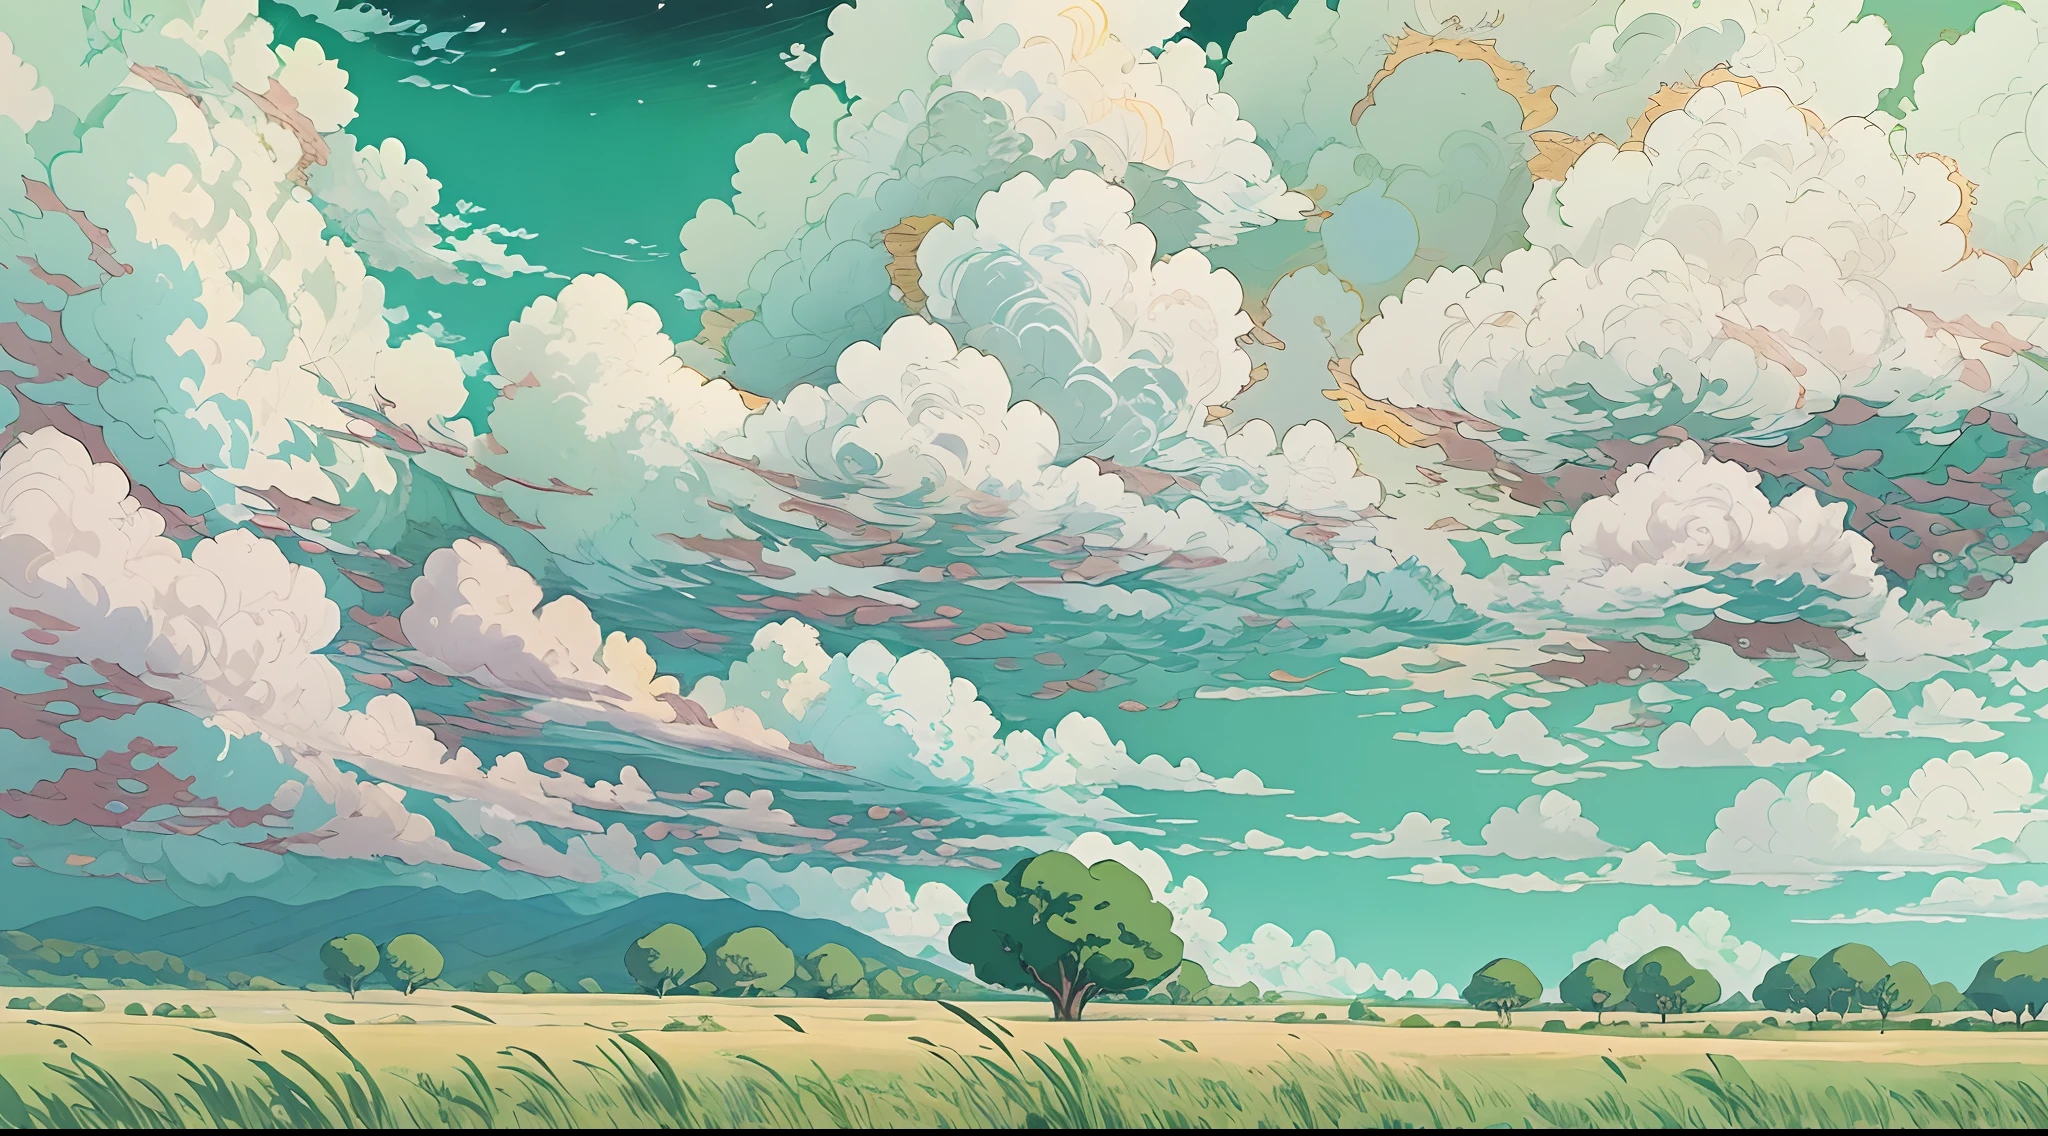 réaliste, authentique, belle et étonnante peinture à l&#39;huile de paysage Studio Ghibli Hayao Miyazaki&#39;Prairie de pétales avec ciel bleu et nuages blancs --v6